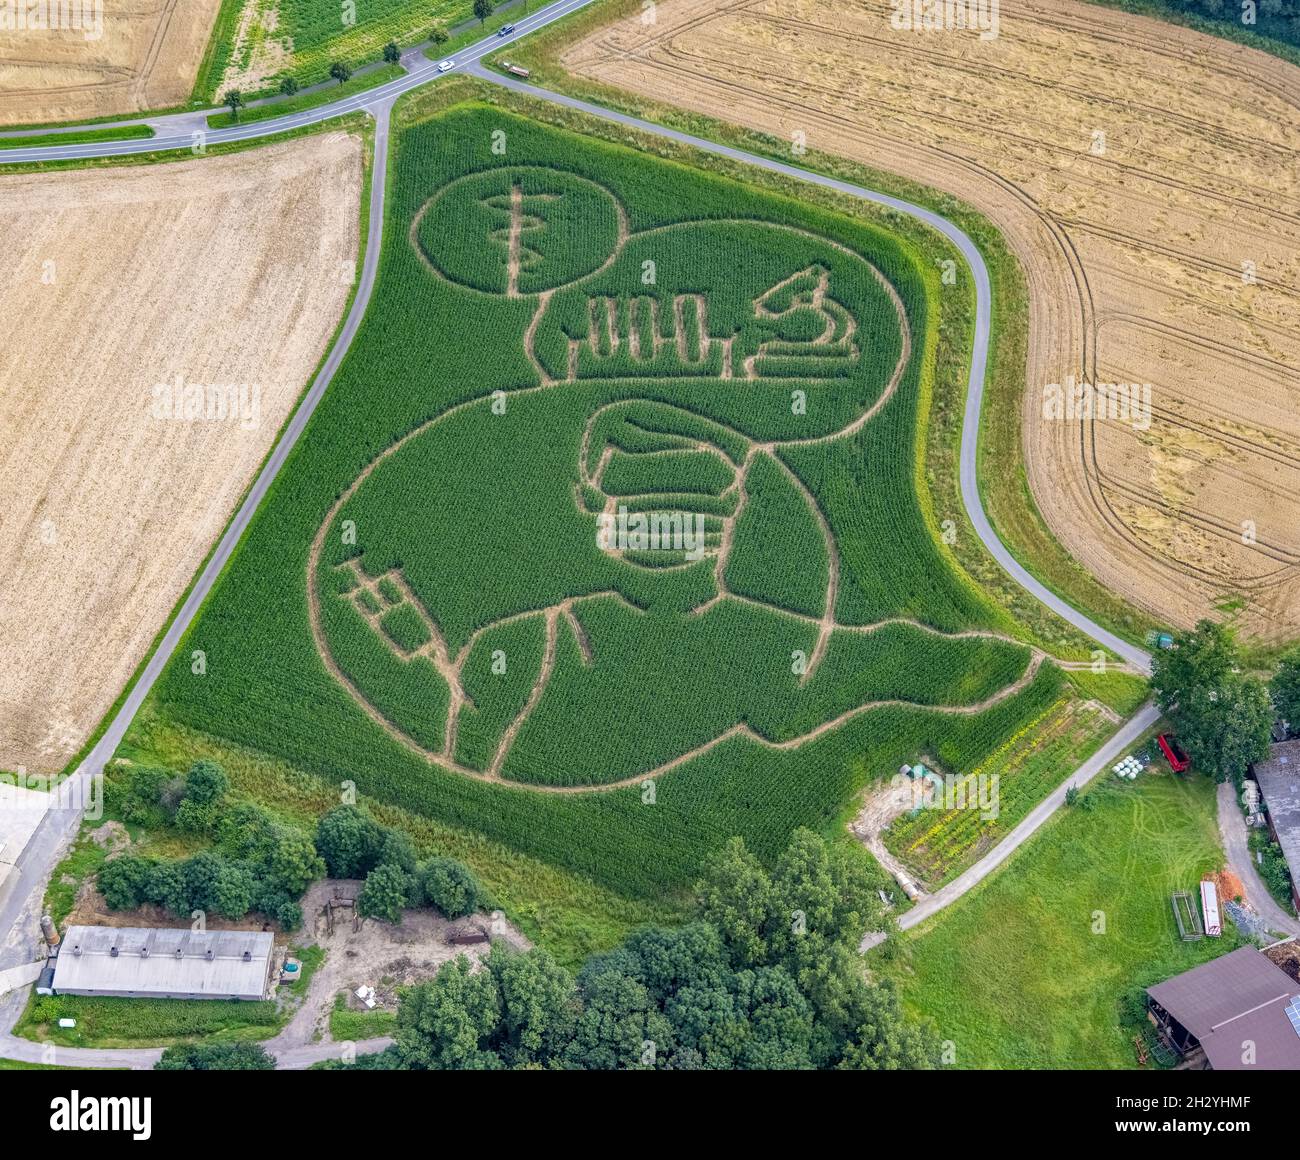 Benedikt Lünemann evoca ogni anno un labirinto di mais nel suo campo. Di solito i motivi sono socialmente critici o politici. Quest'anno è una persona wi Foto Stock